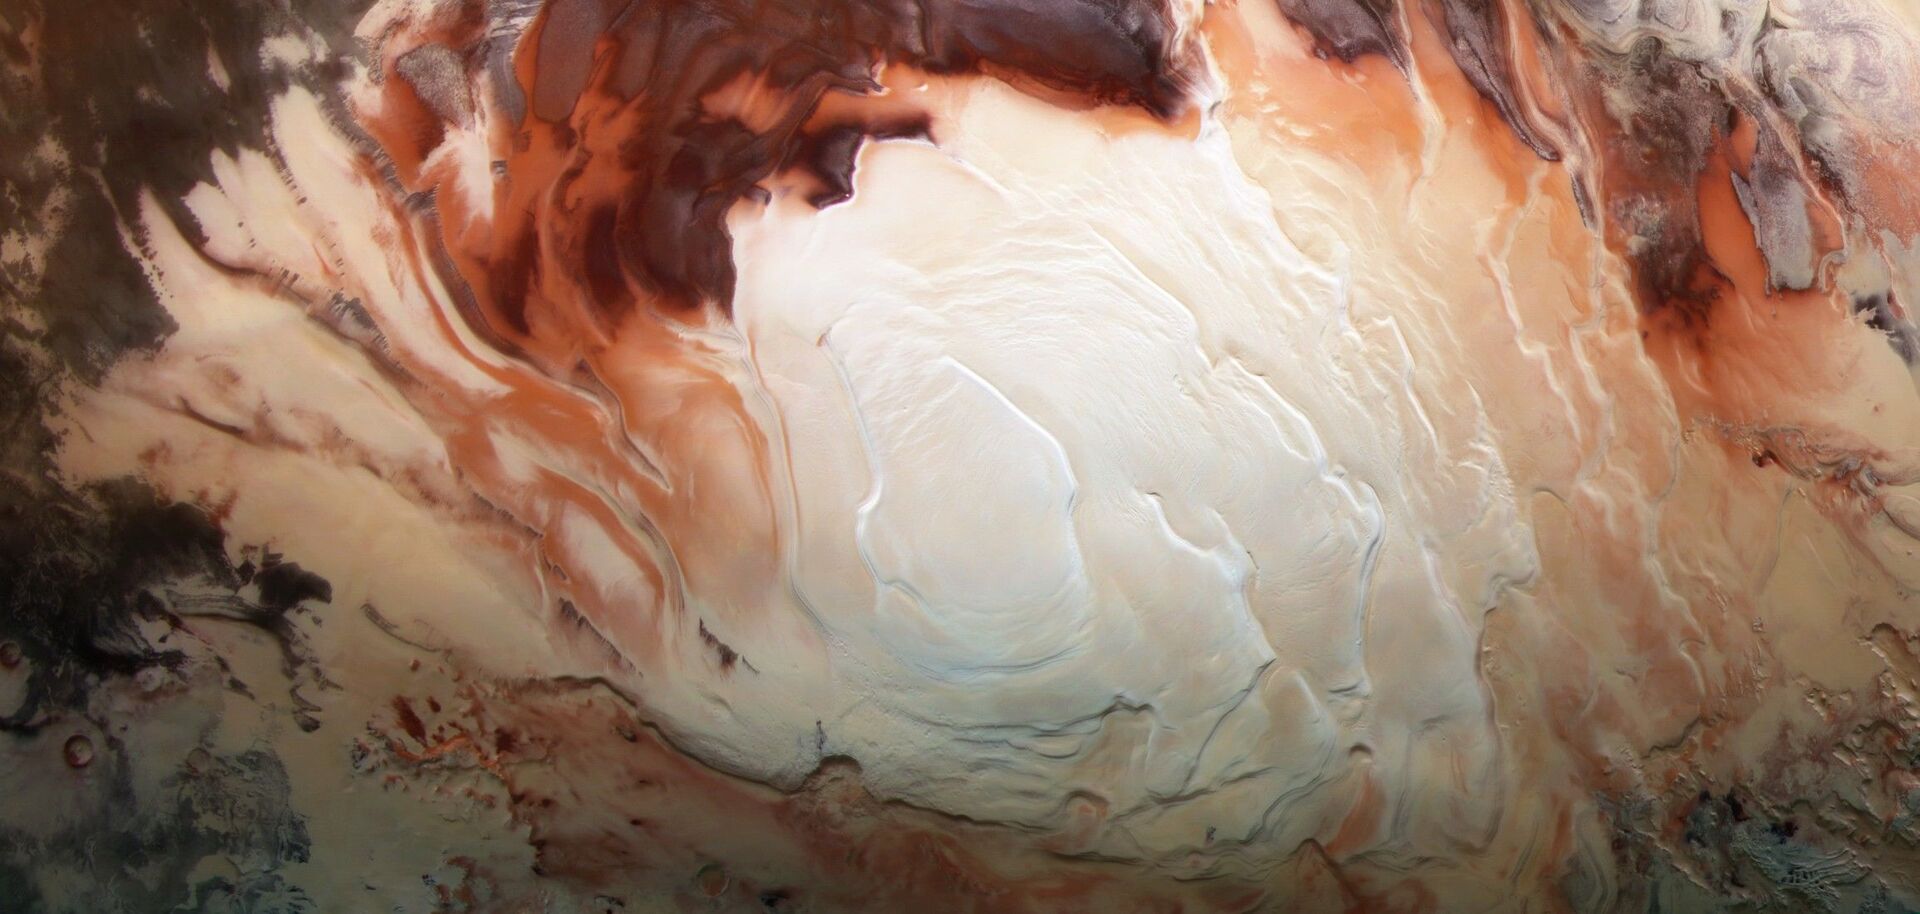 Novo estudo sugere que Marte teria dezenas de lagos subterrâneos (FOTOS) - Sputnik Brasil, 1920, 29.06.2021